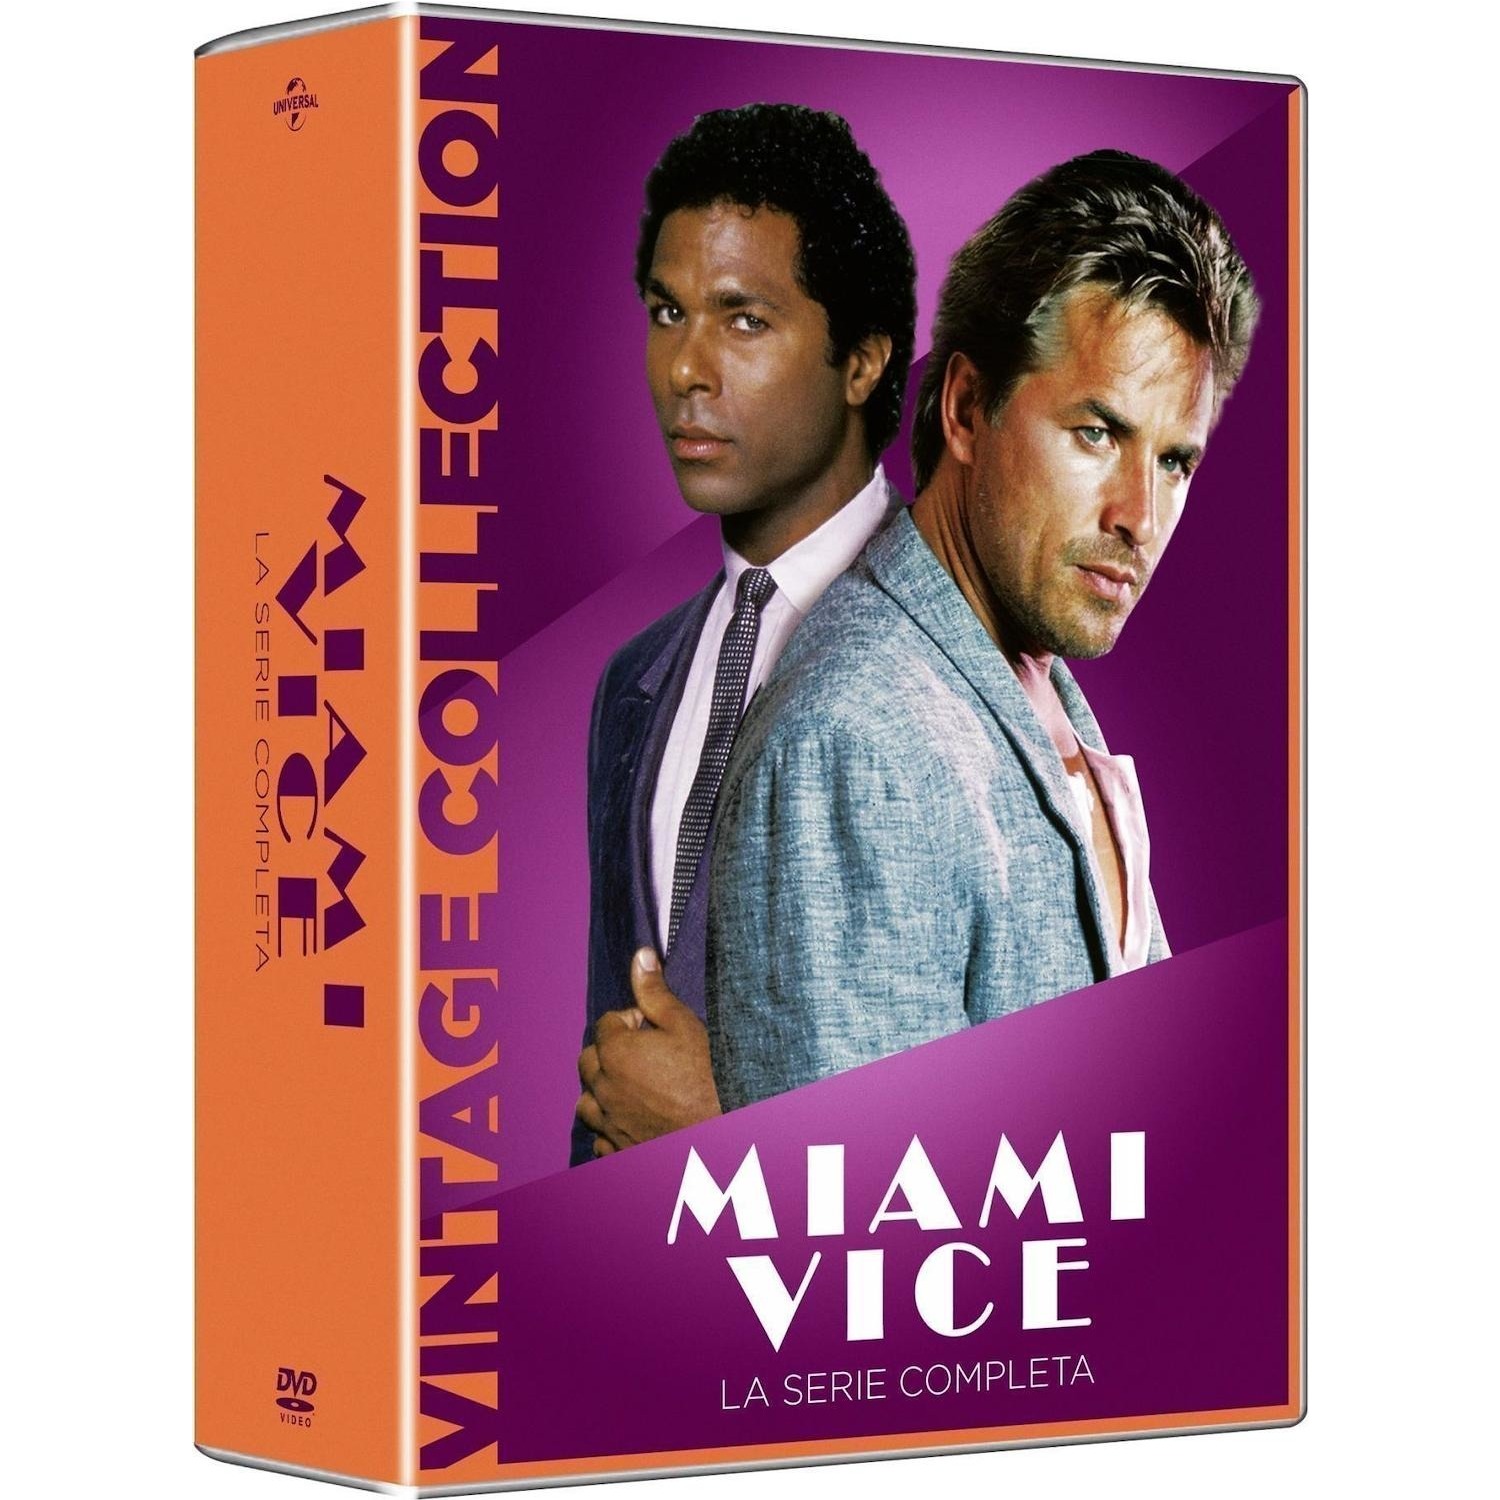 Immagine per Serie TV DVD Miami Vice 1-5 La Serie Completa "Vintage Collection" da DIMOStore